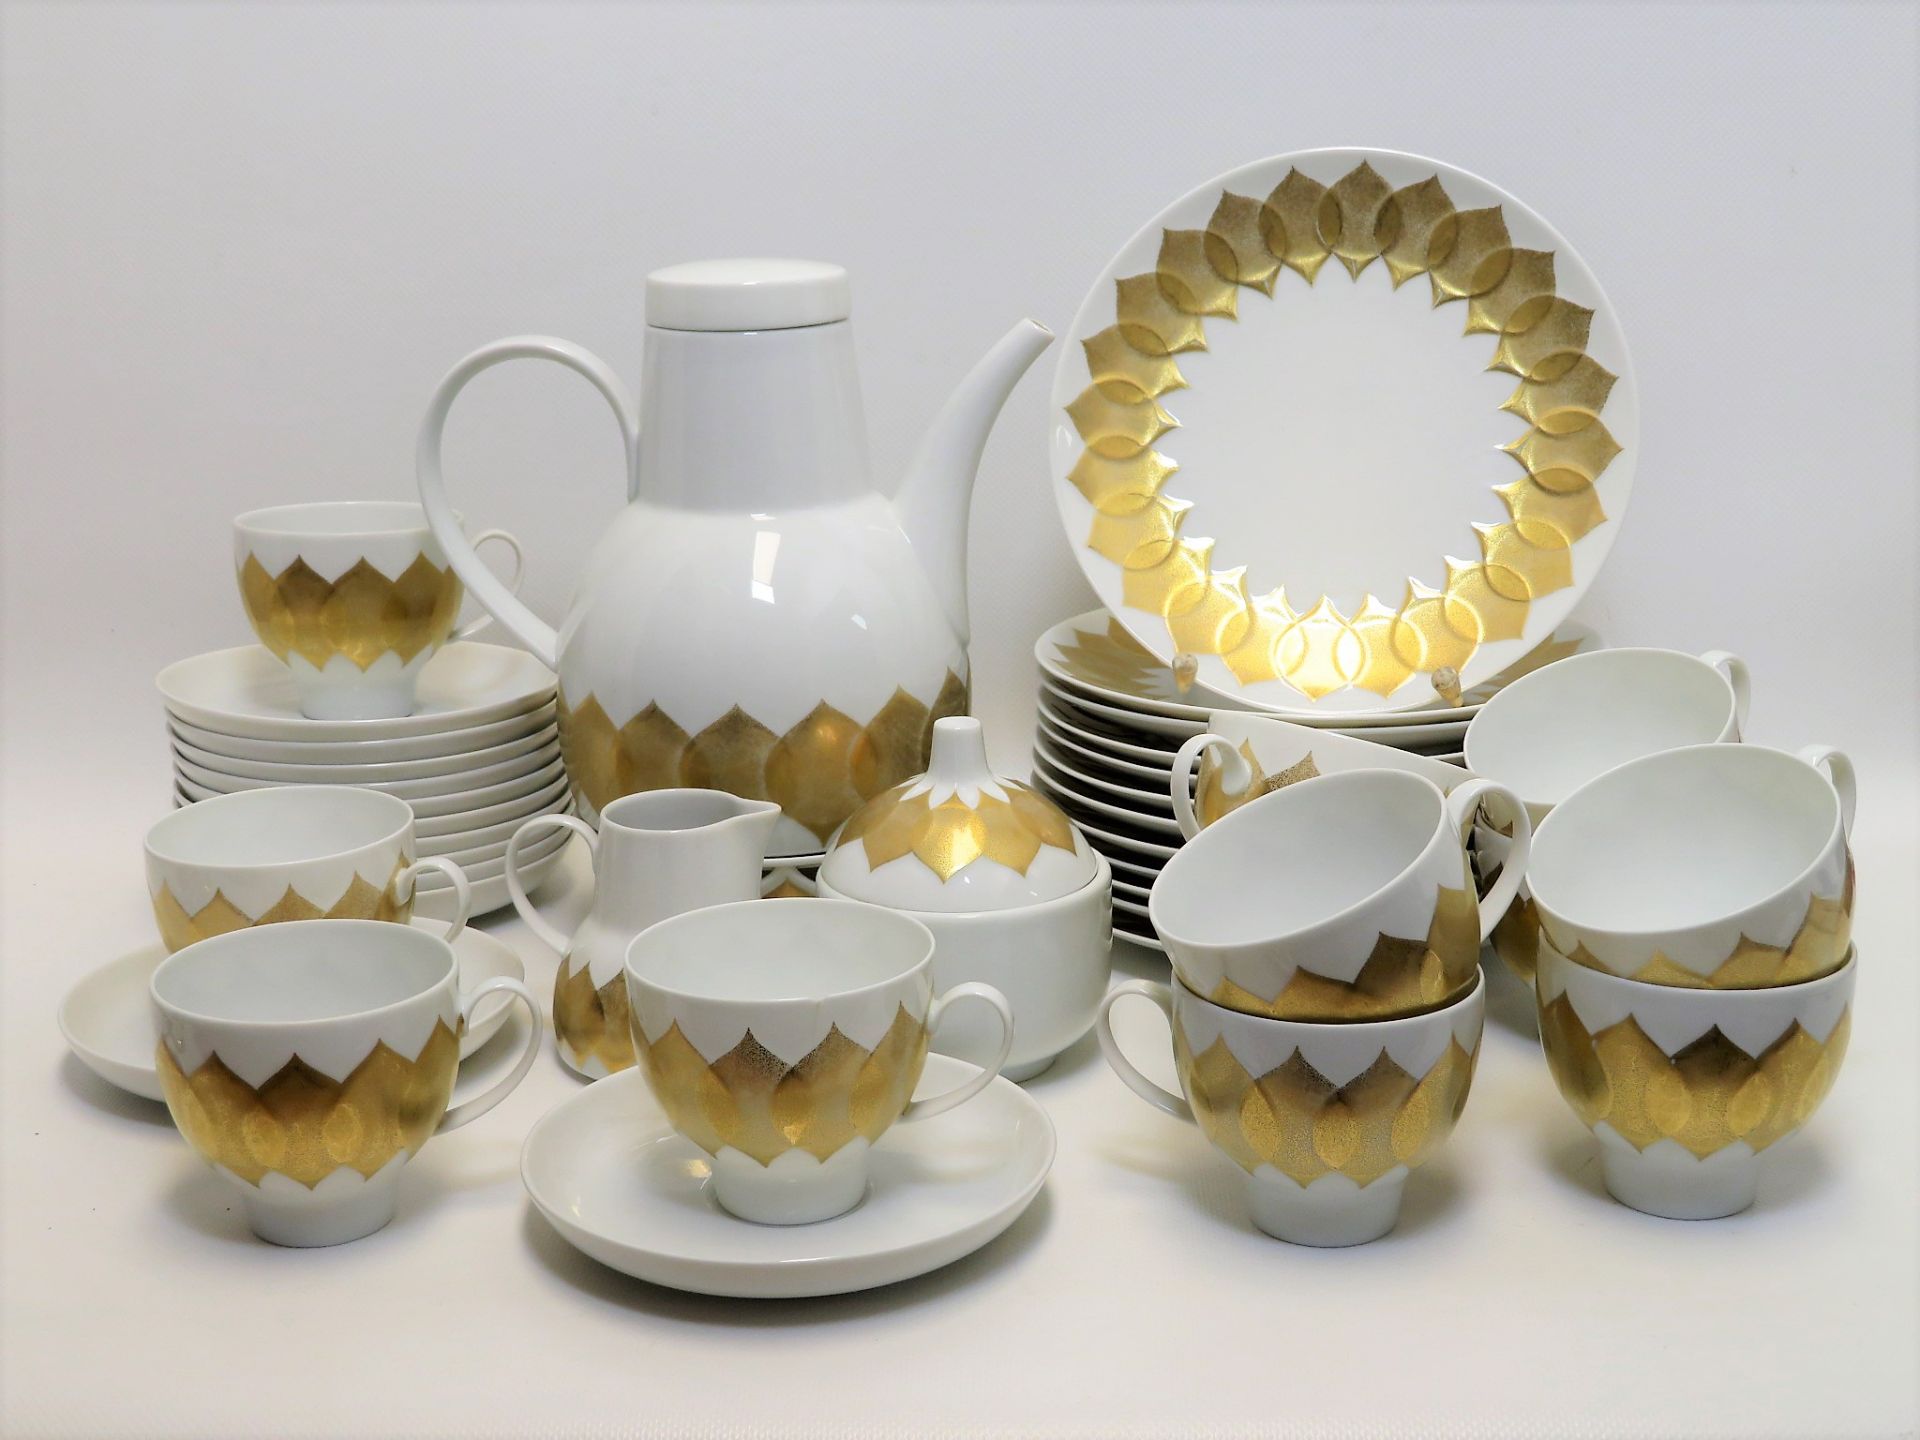 Kaffeeservice, Rosenthal, Entwurf Björn Wiinblad (1918 - 2006), Modell Lotus, 4